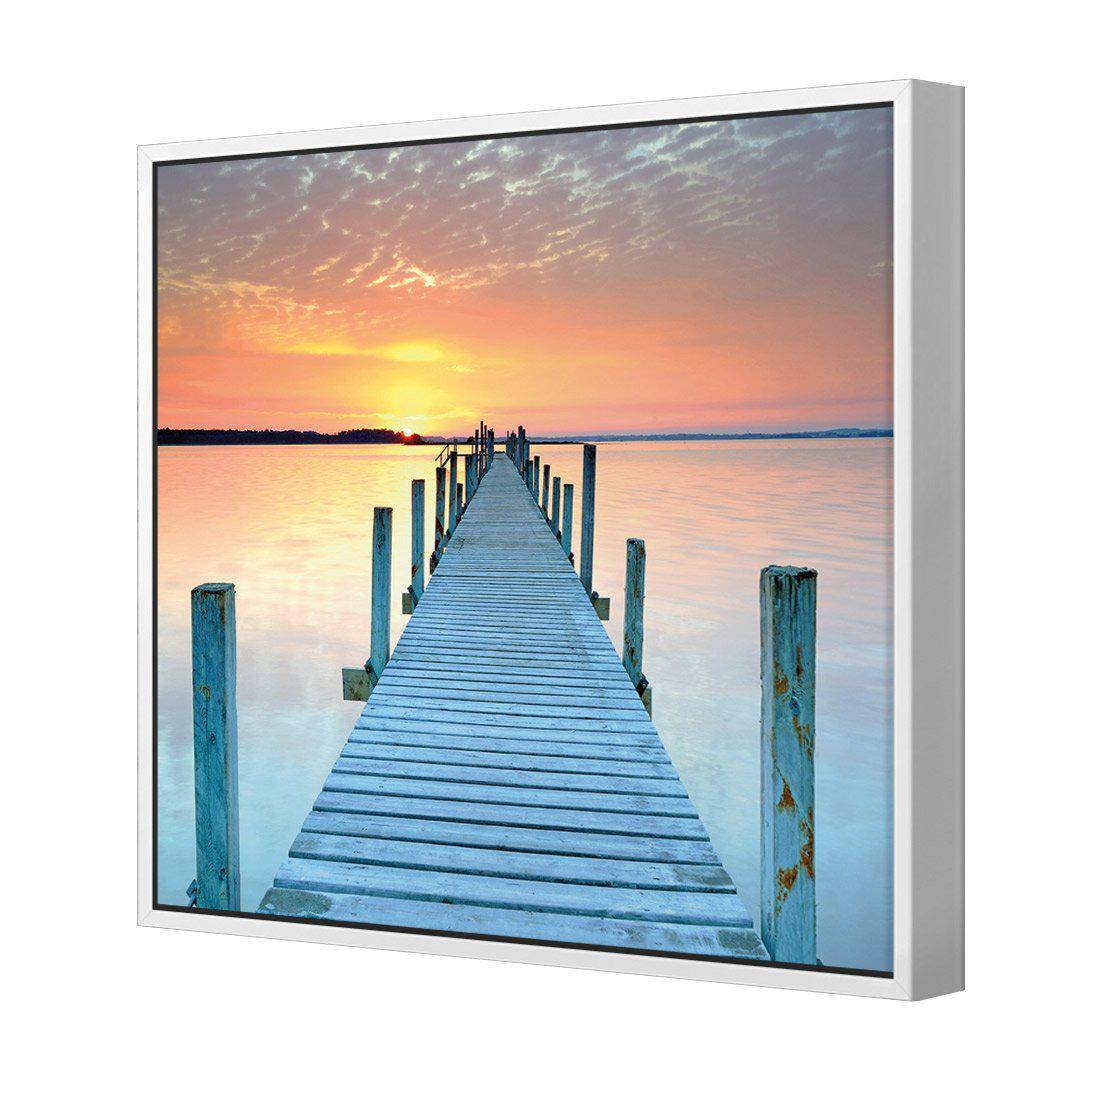 Sunset Pier Canvas Art-Canvas-Wall Art Designs-30x30cm-Canvas - White Frame-Wall Art Designs